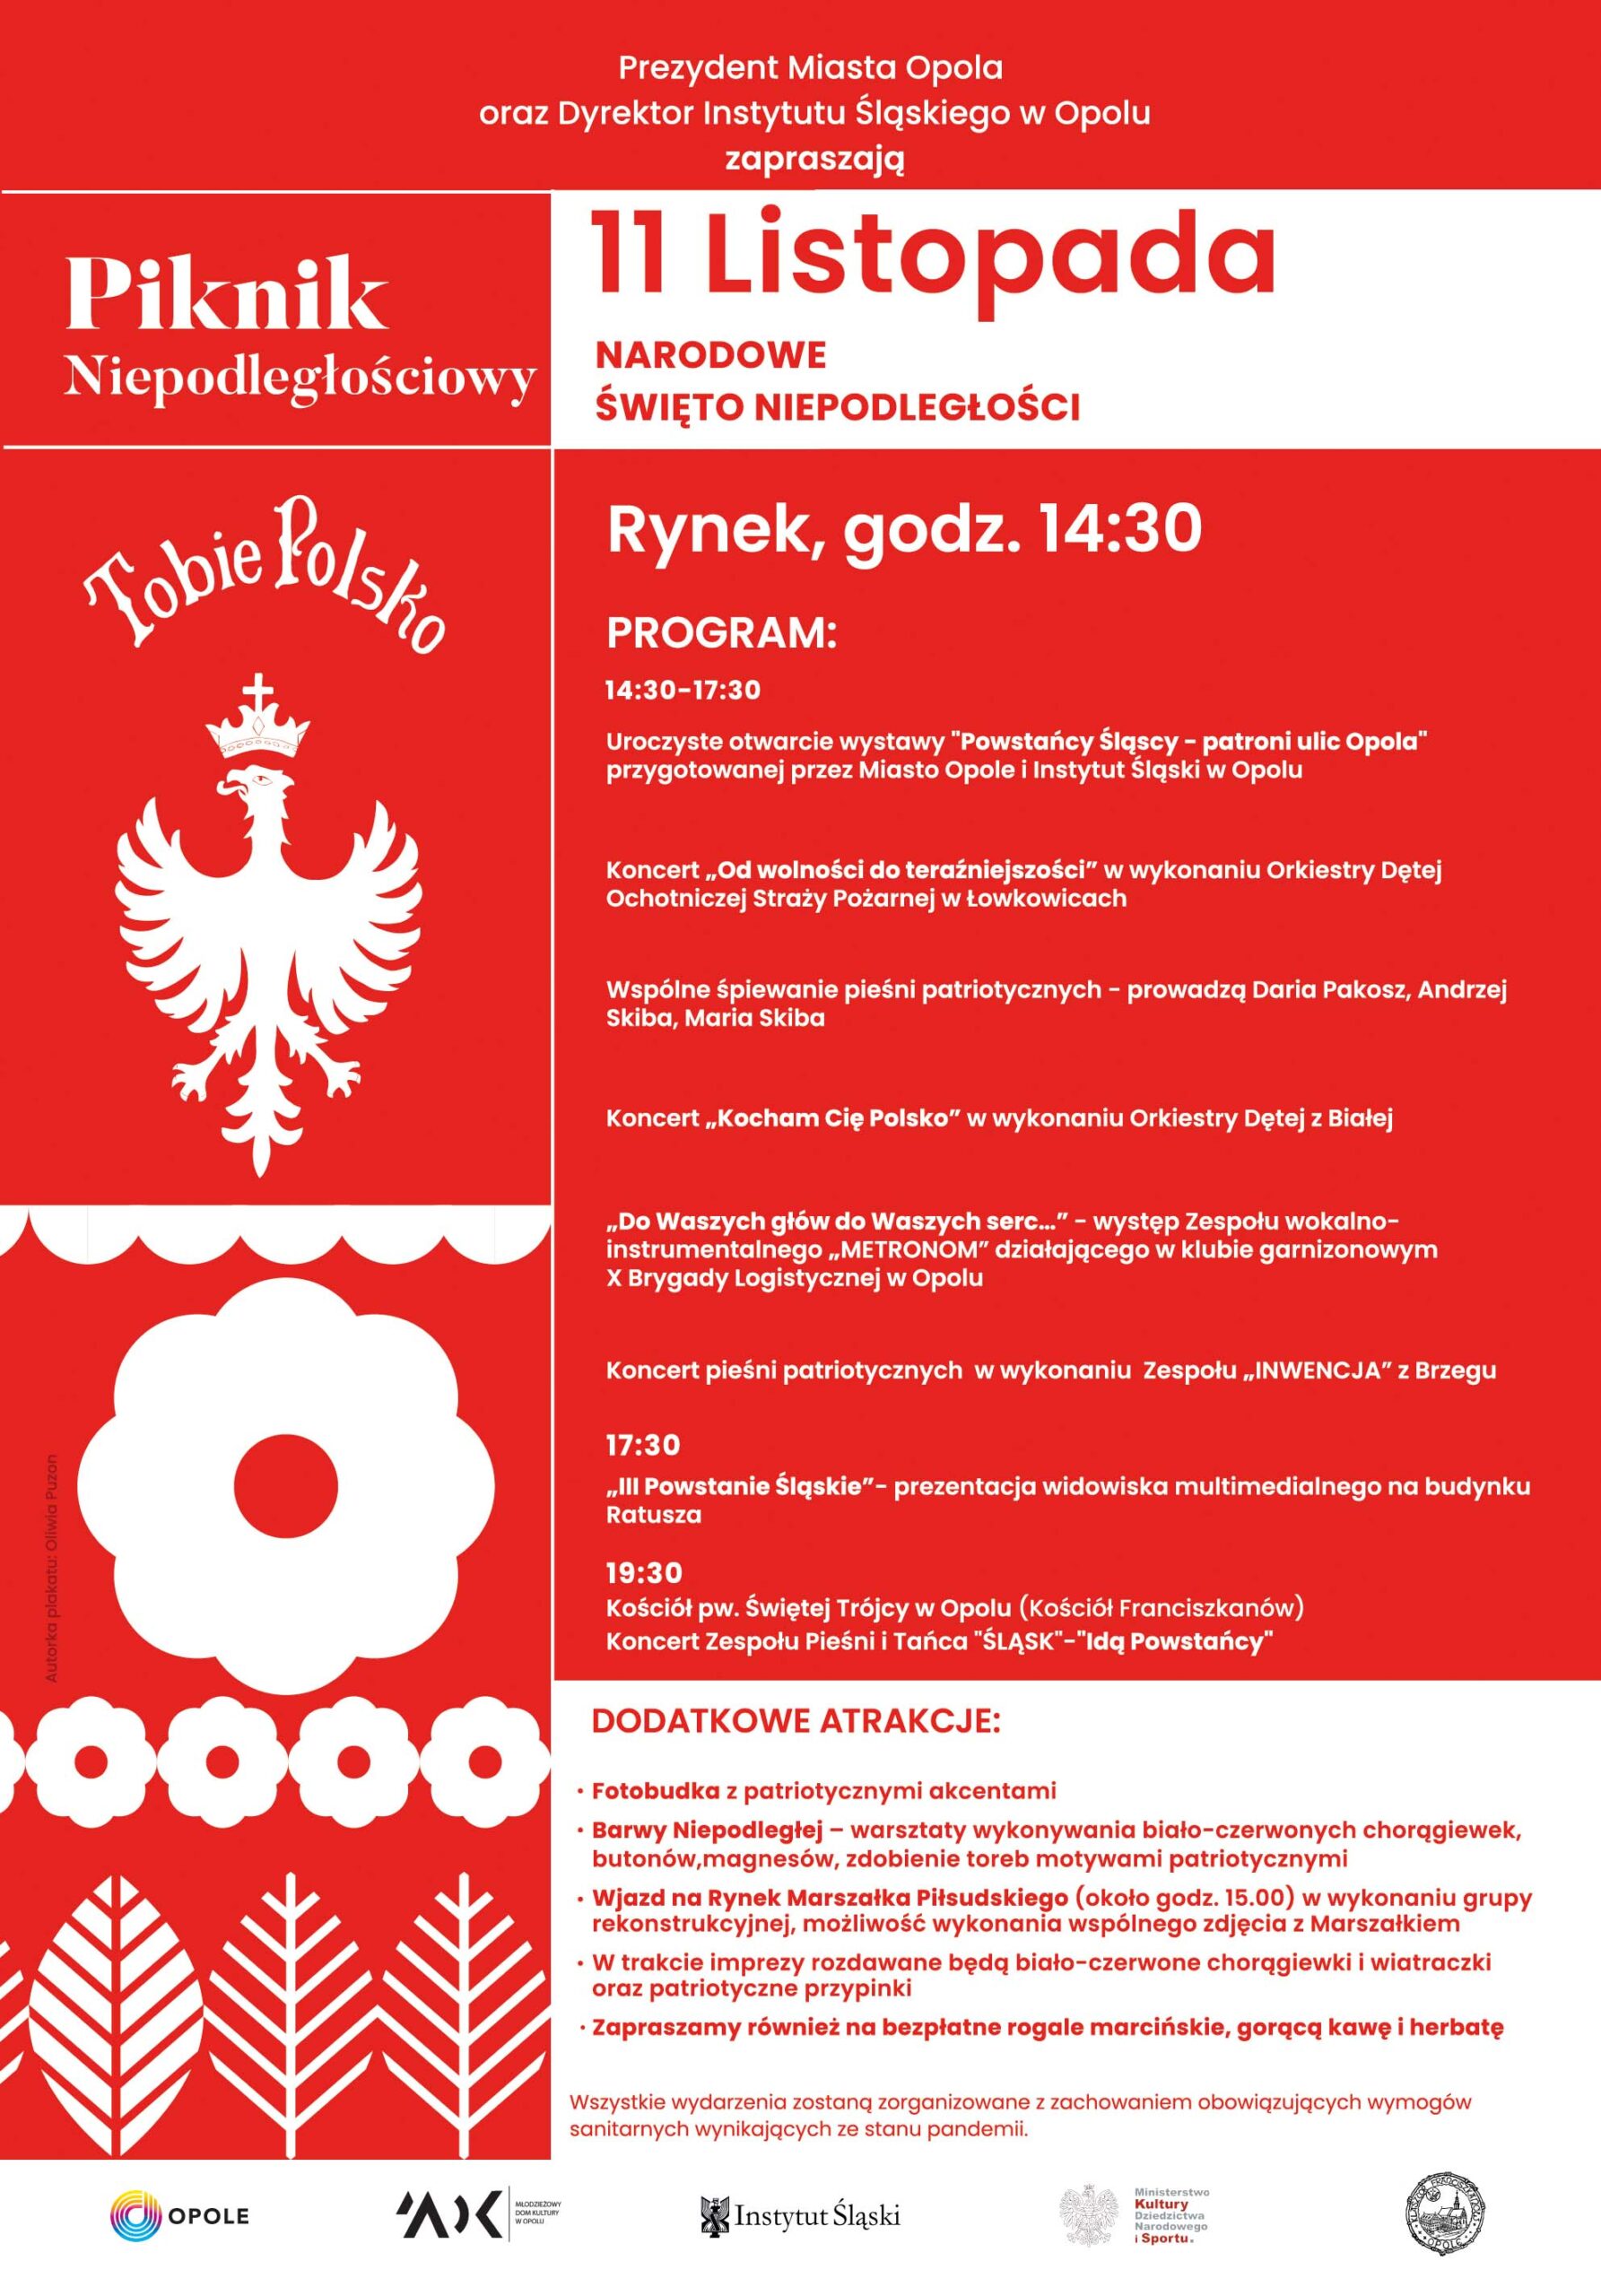 Program Pikniku Niepodległościowego w Opoli 11.11.2021